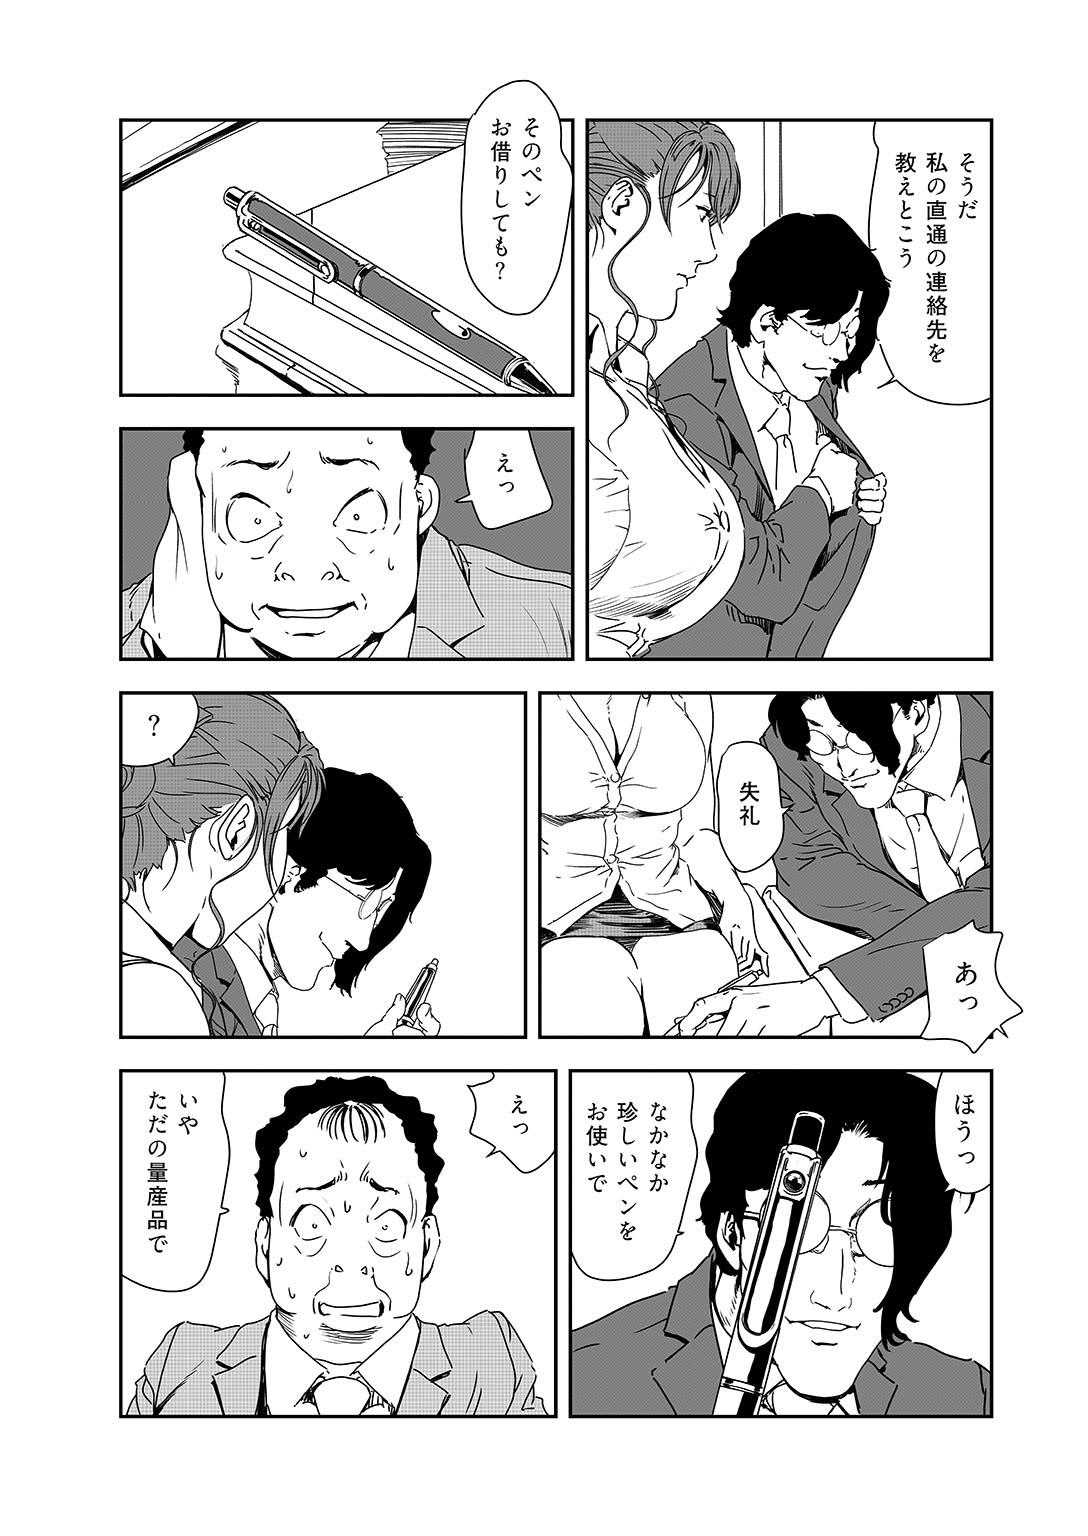 Bitch Nikuhisyo Yukiko 38 Chudai - Page 4